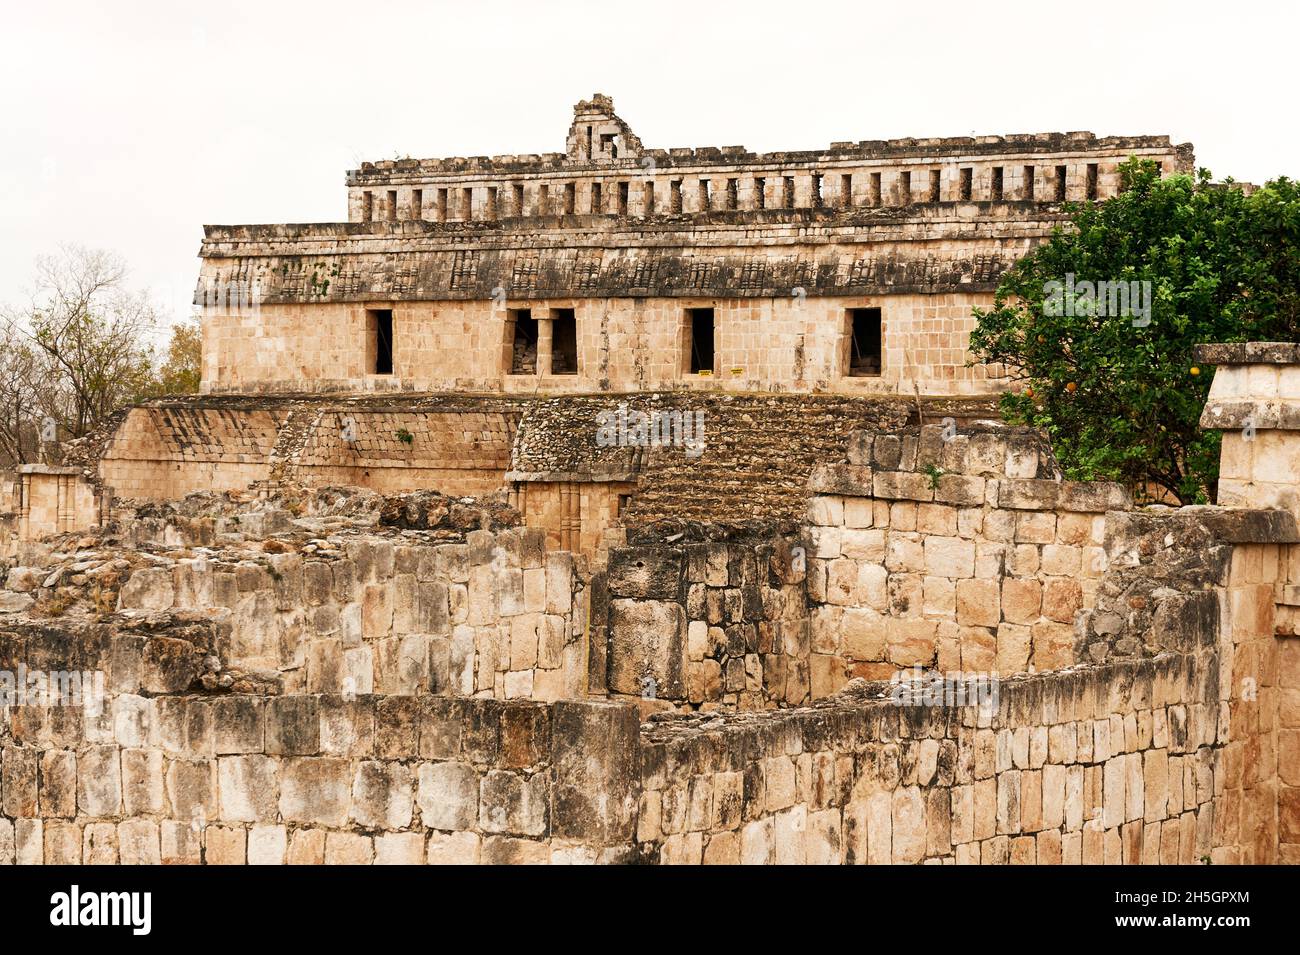 The Palace or El Palacio at the Mayan ruins of Kabah, Yucatan, Mexico Stock Photo